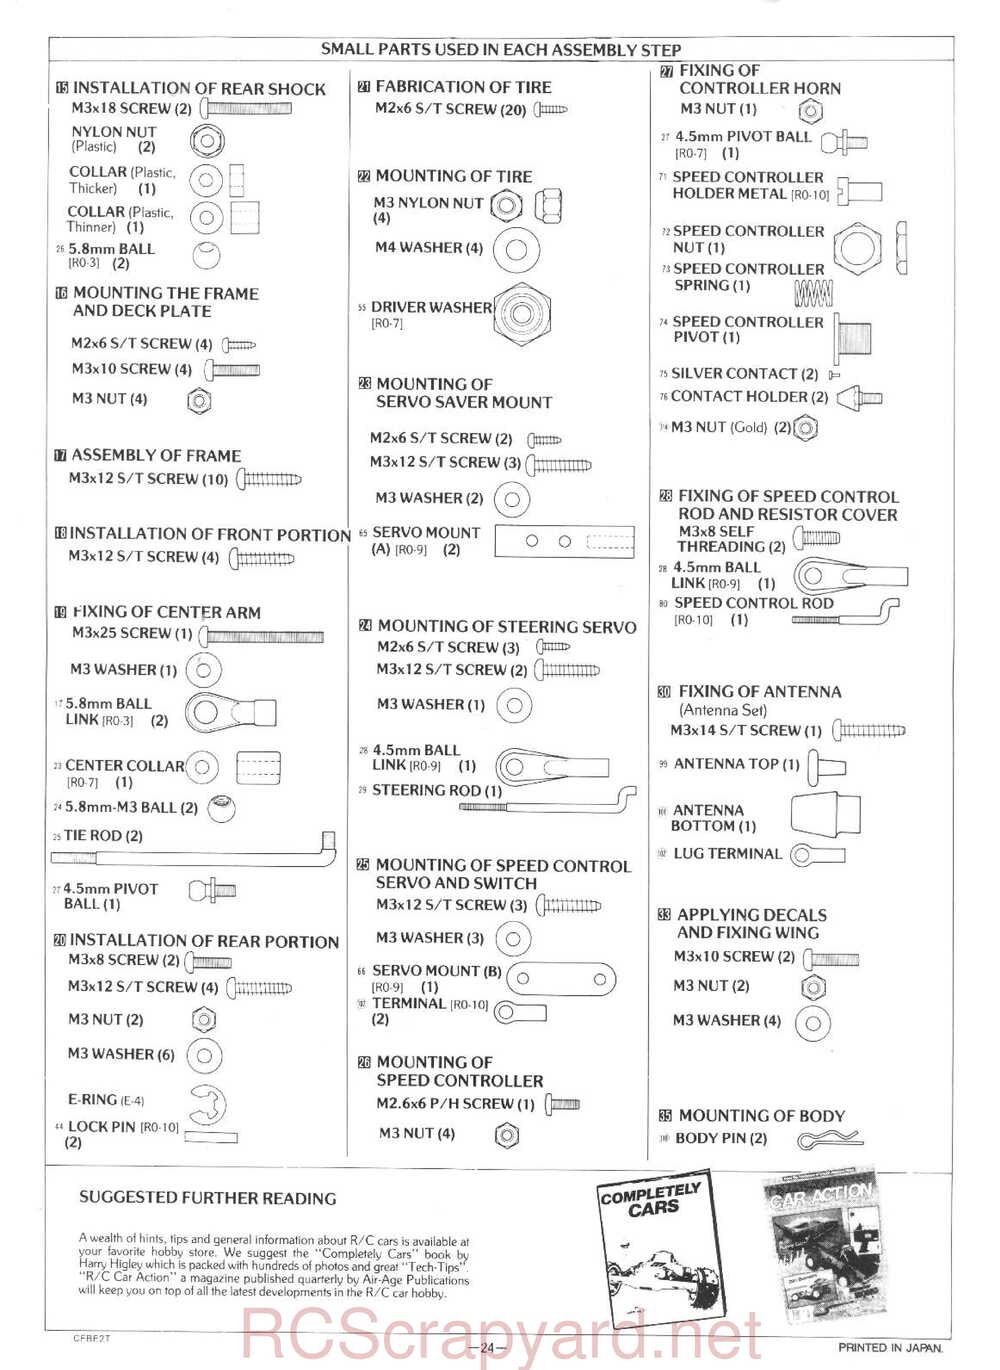 Kyosho - 3101 - Rocky - Manual - Page 24